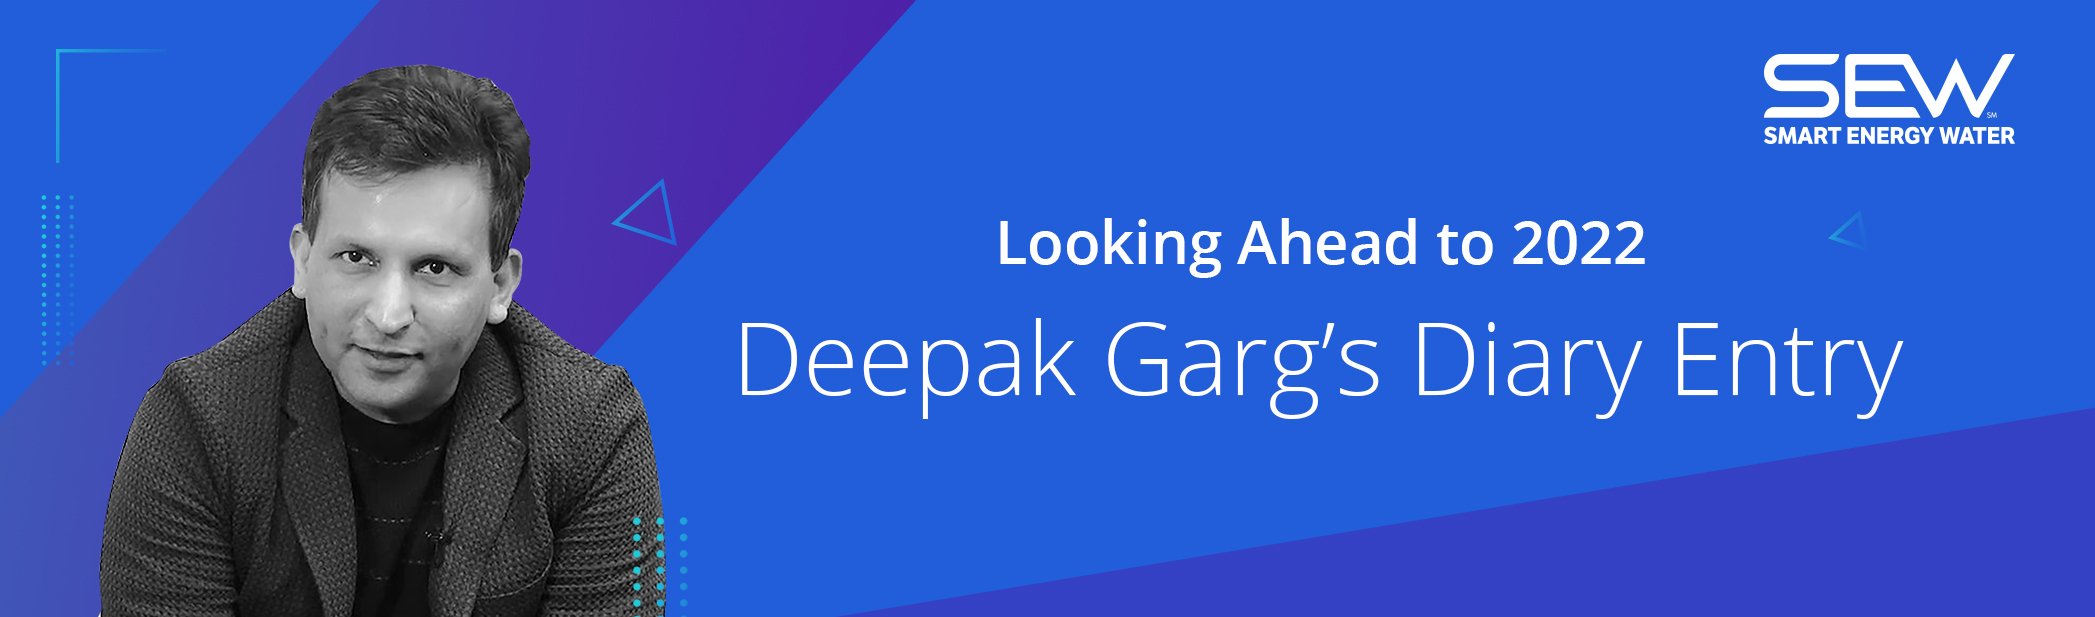 Looking Ahead to 2022- Deepak Garg’s Diary Entry